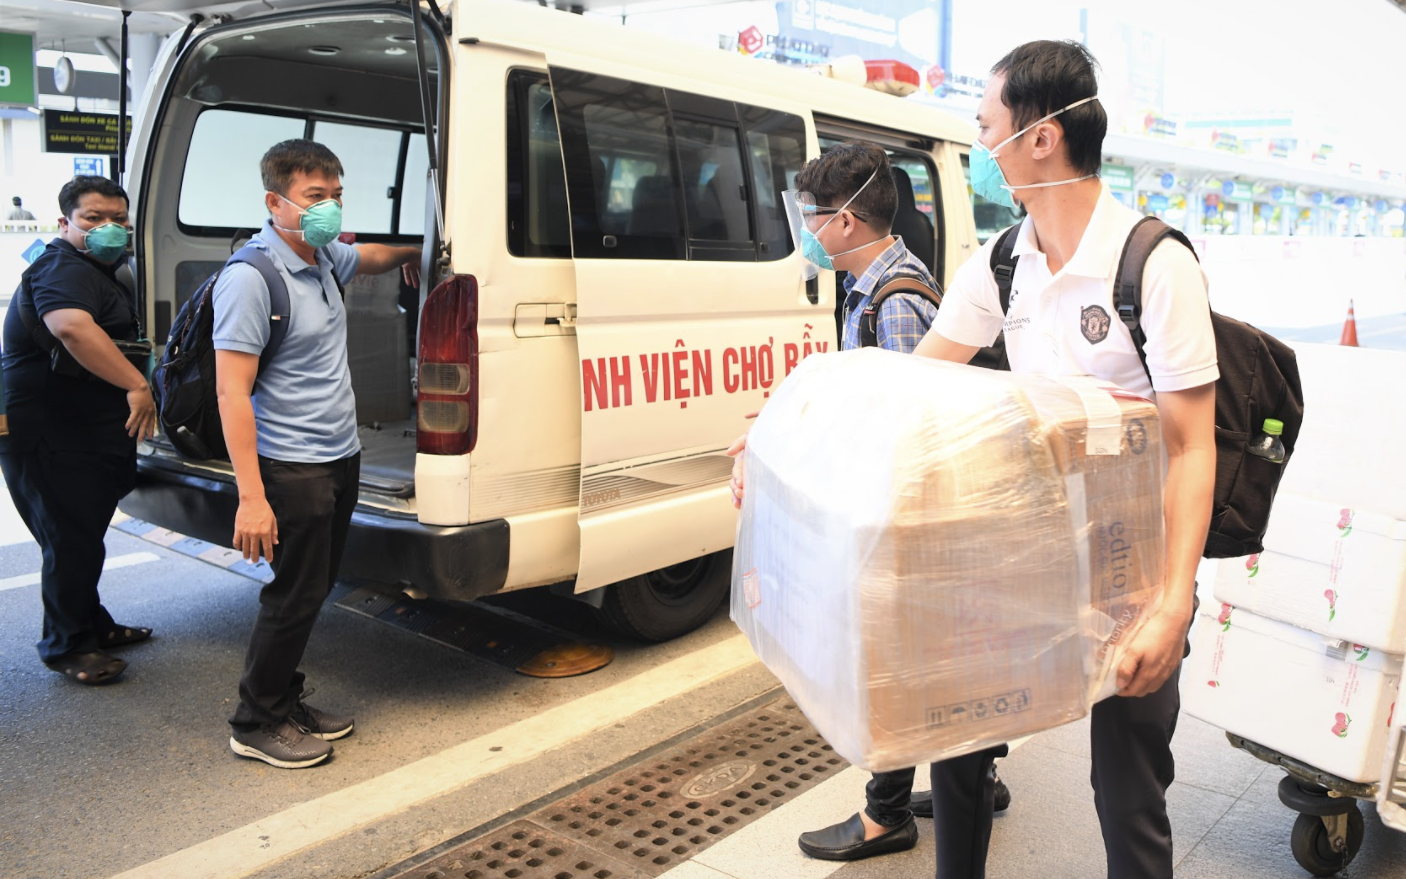 Đội phản ứng nhanh Bệnh viện Chợ Rẫy trở về từ tâm dịch Bắc Giang, tiếp tục chống COVID-19 tại TP.HCM